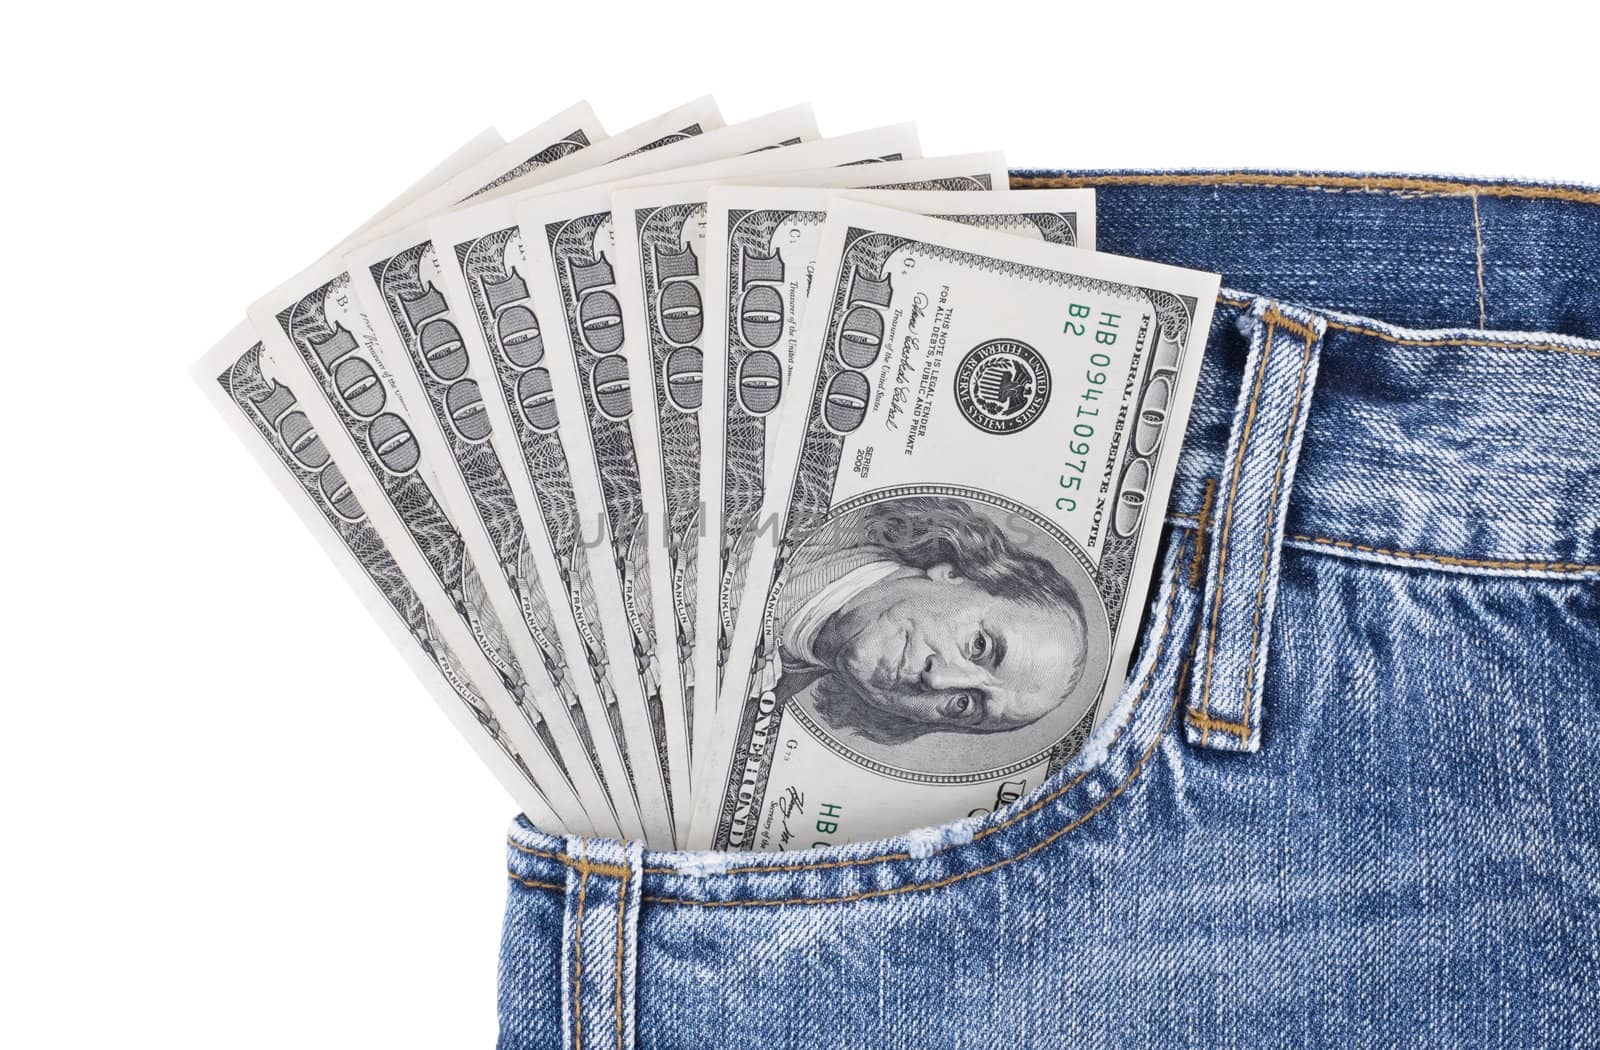 Many hundred dollar bills in pocket of blue jeans by rozhenyuk